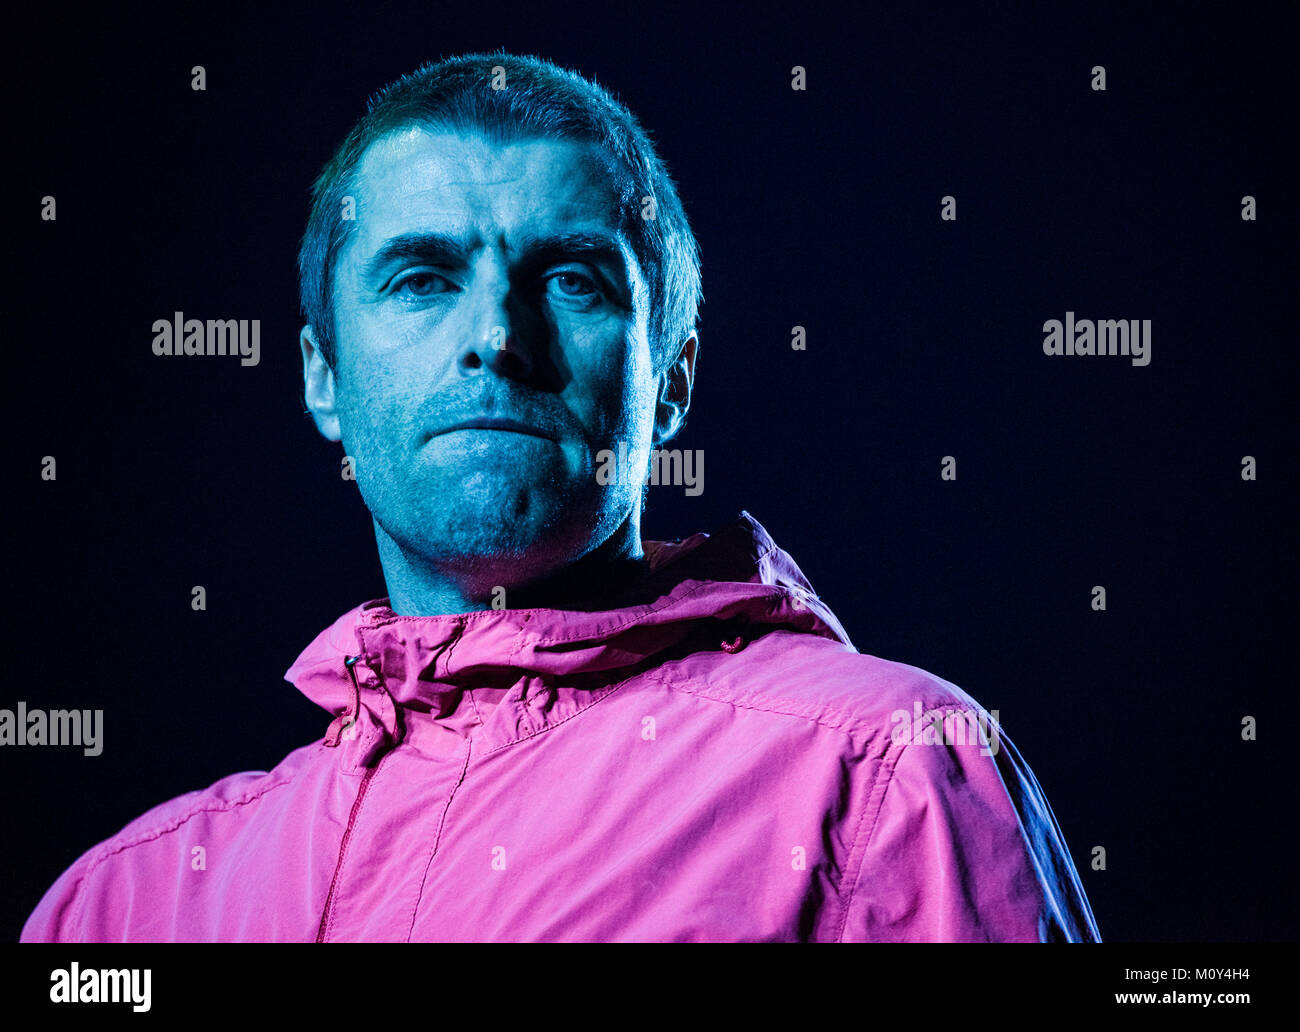 Portrait de Liam Gallagher dans dossier rose, performances live, Leeds, Dec 2017 Banque D'Images